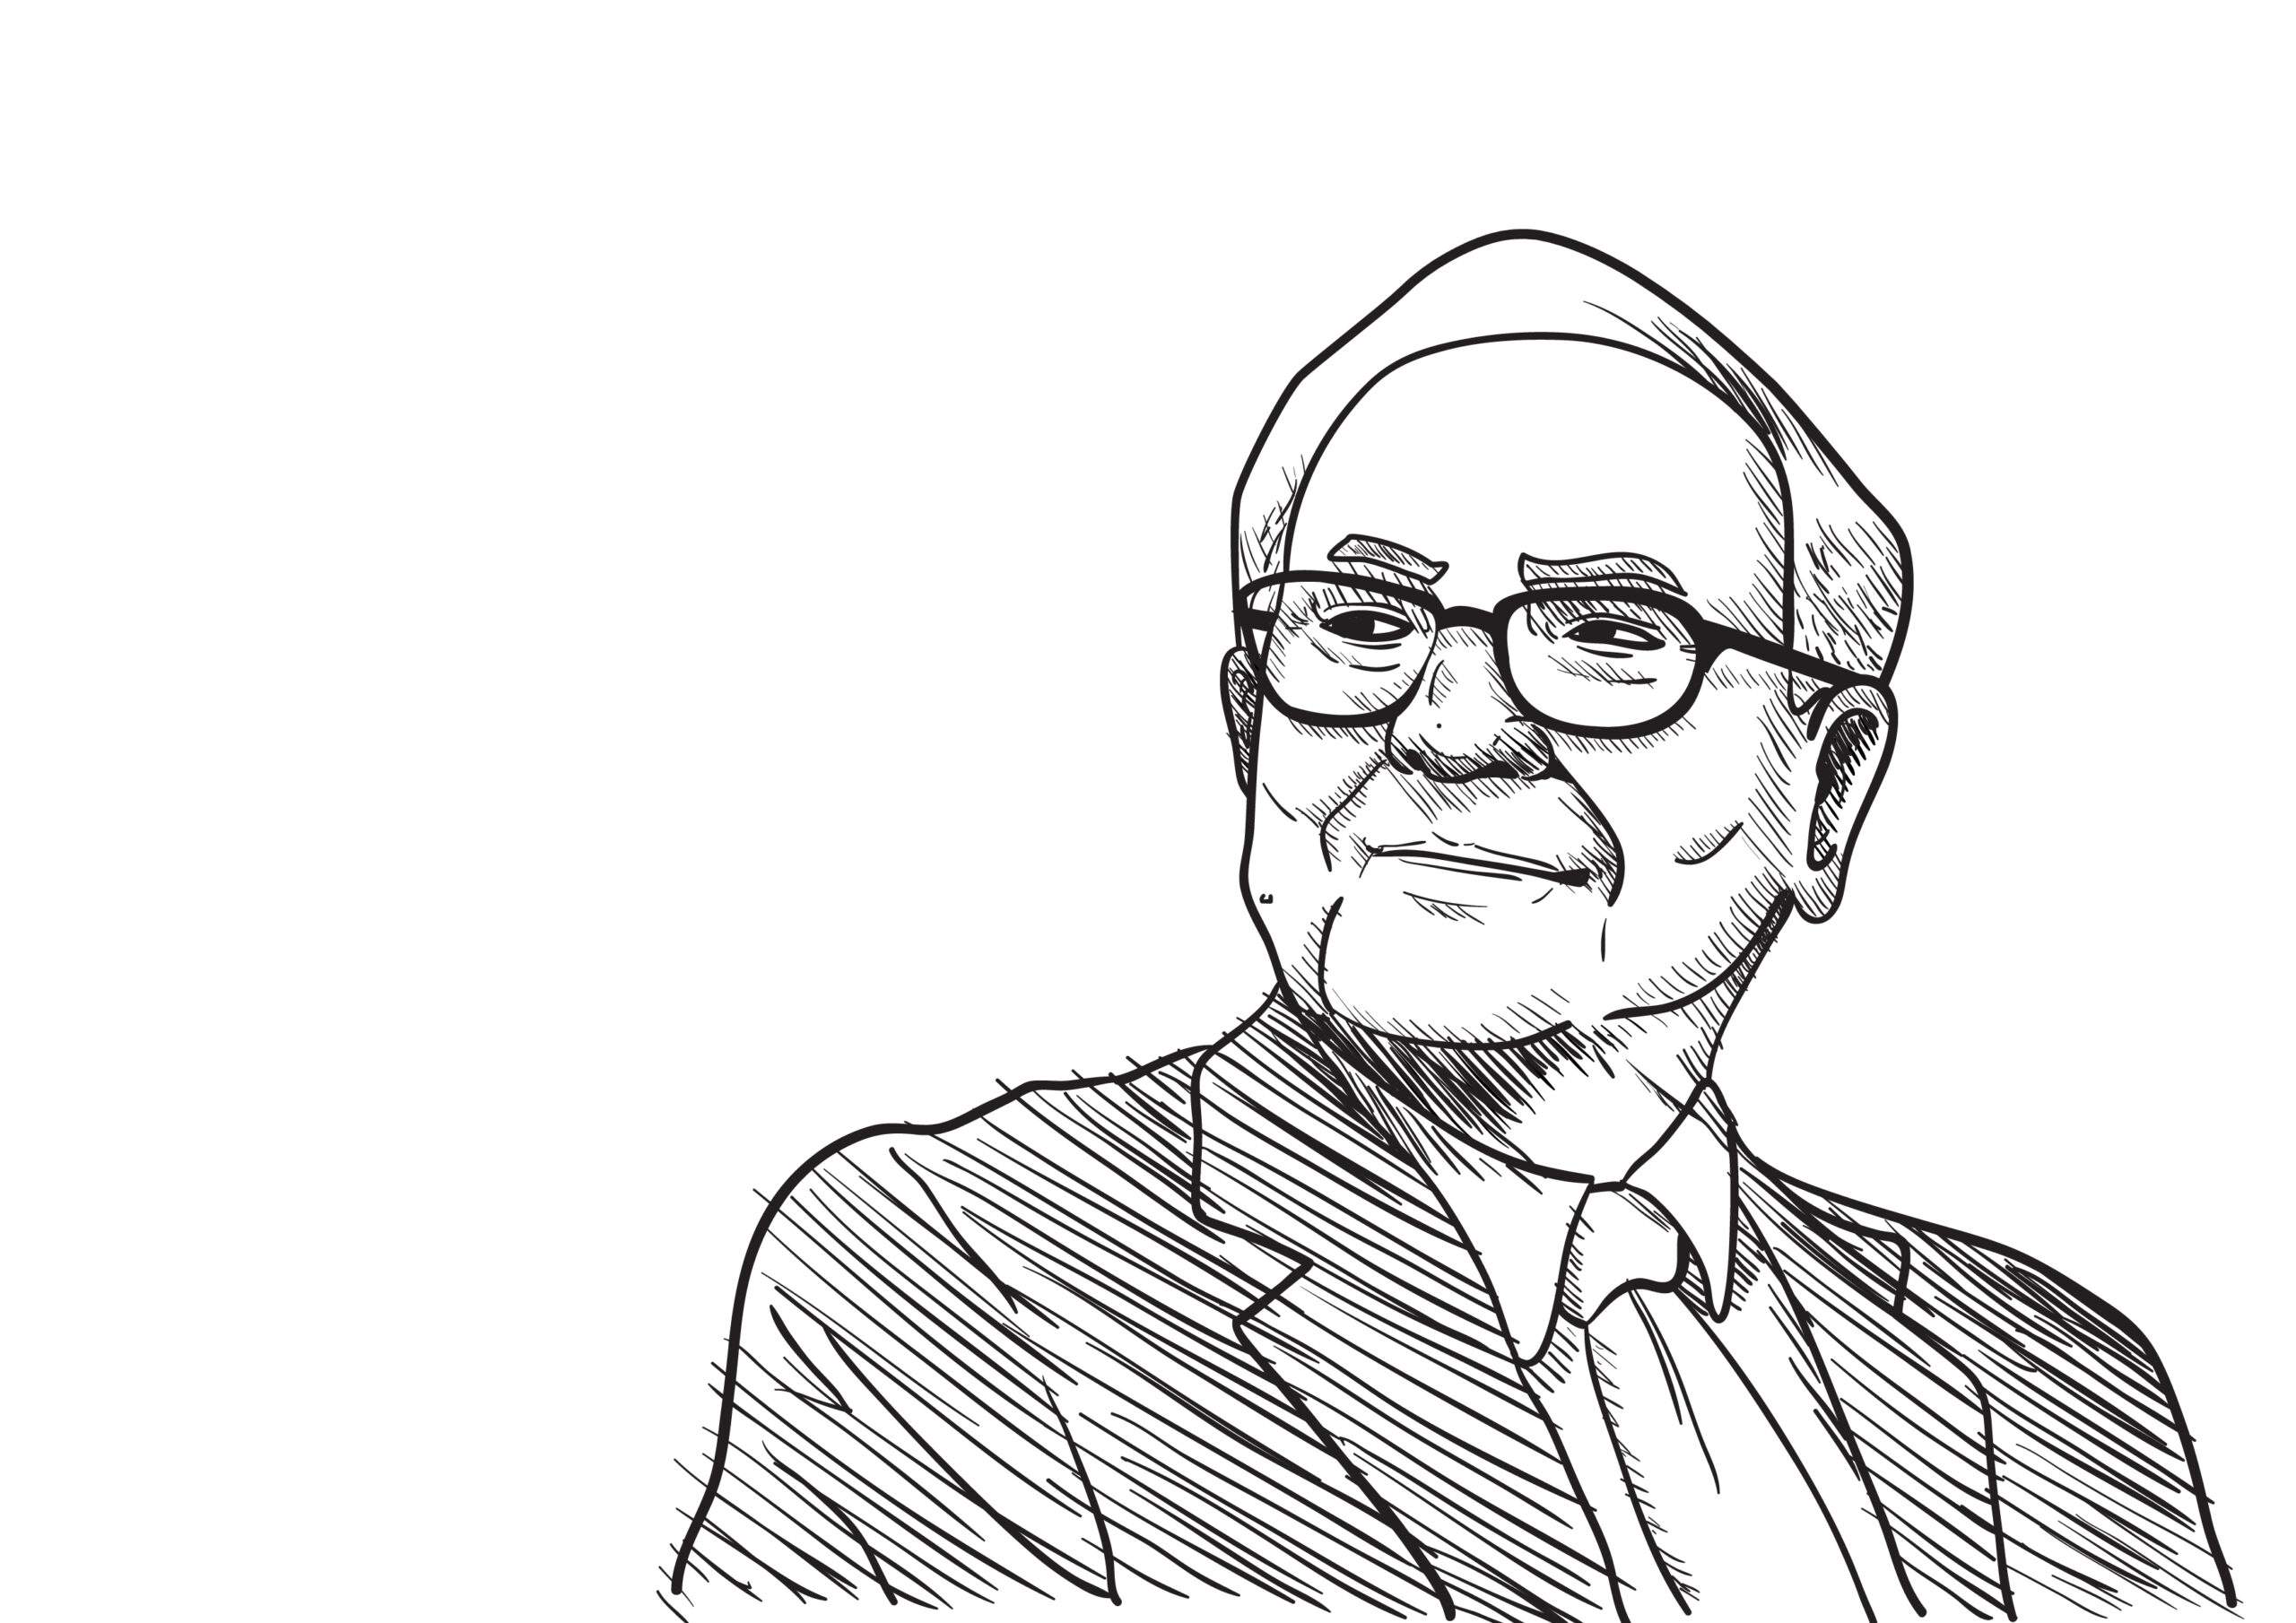 What's Warren Buffett up to?